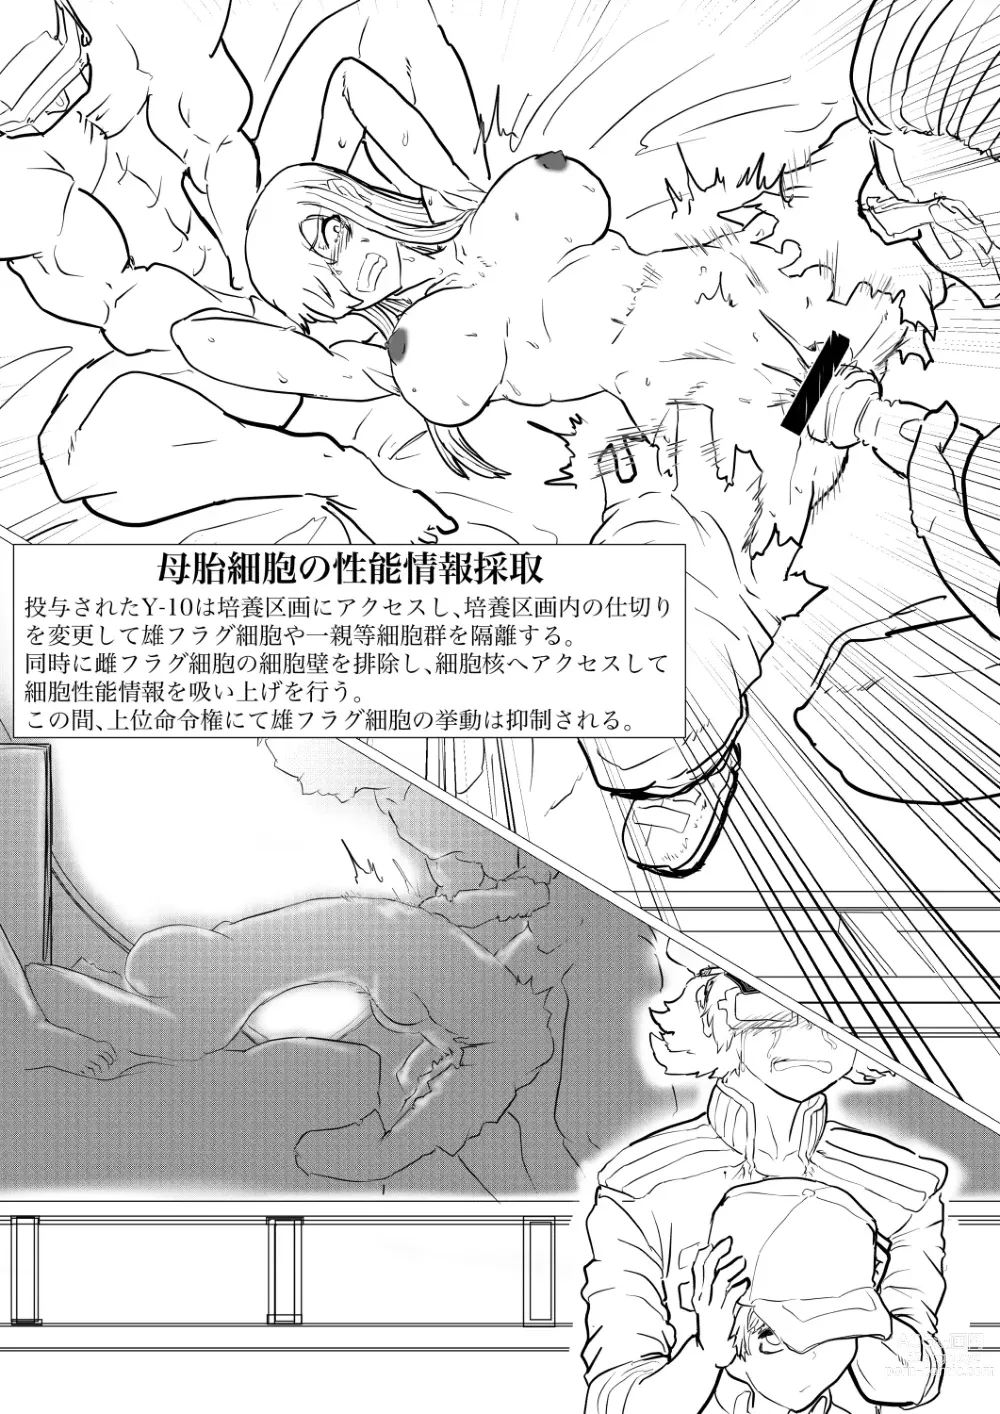 Page 5 of doujinshi Hakkeikyu ga shingata chiryo de kyosei heni-zai ni naburareru!!